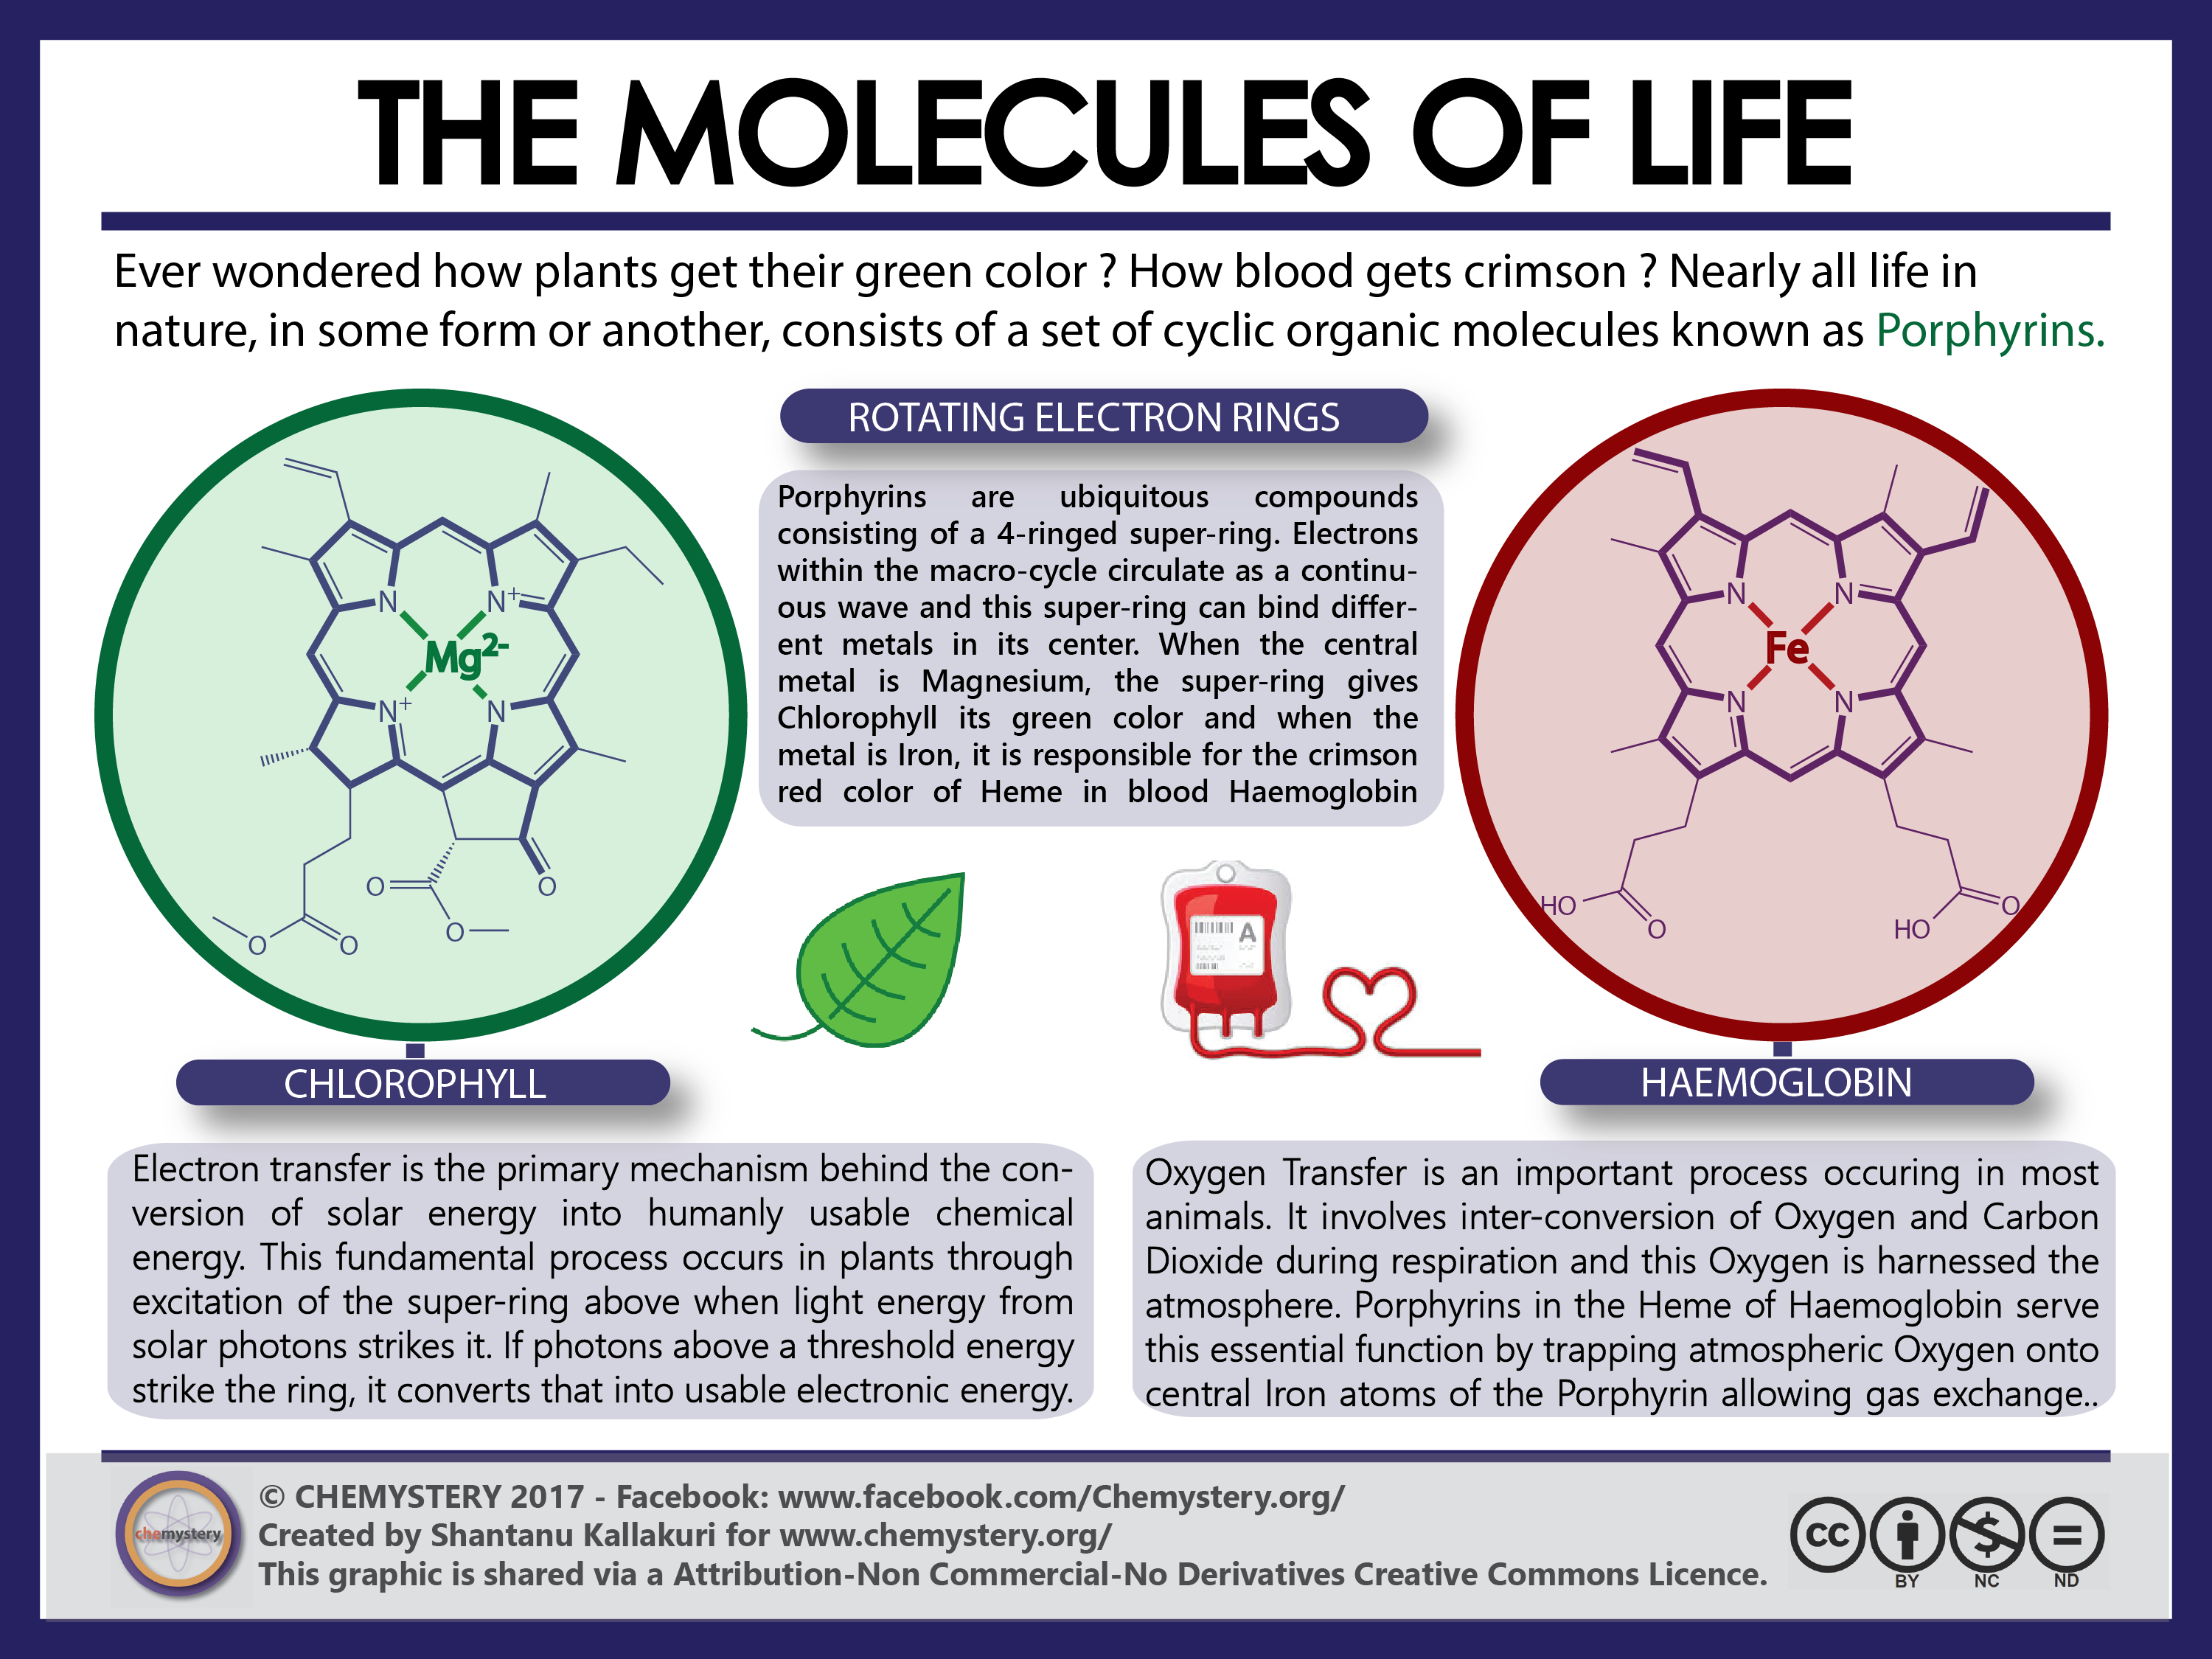 1. The molecules of Life – “Porphyrins”